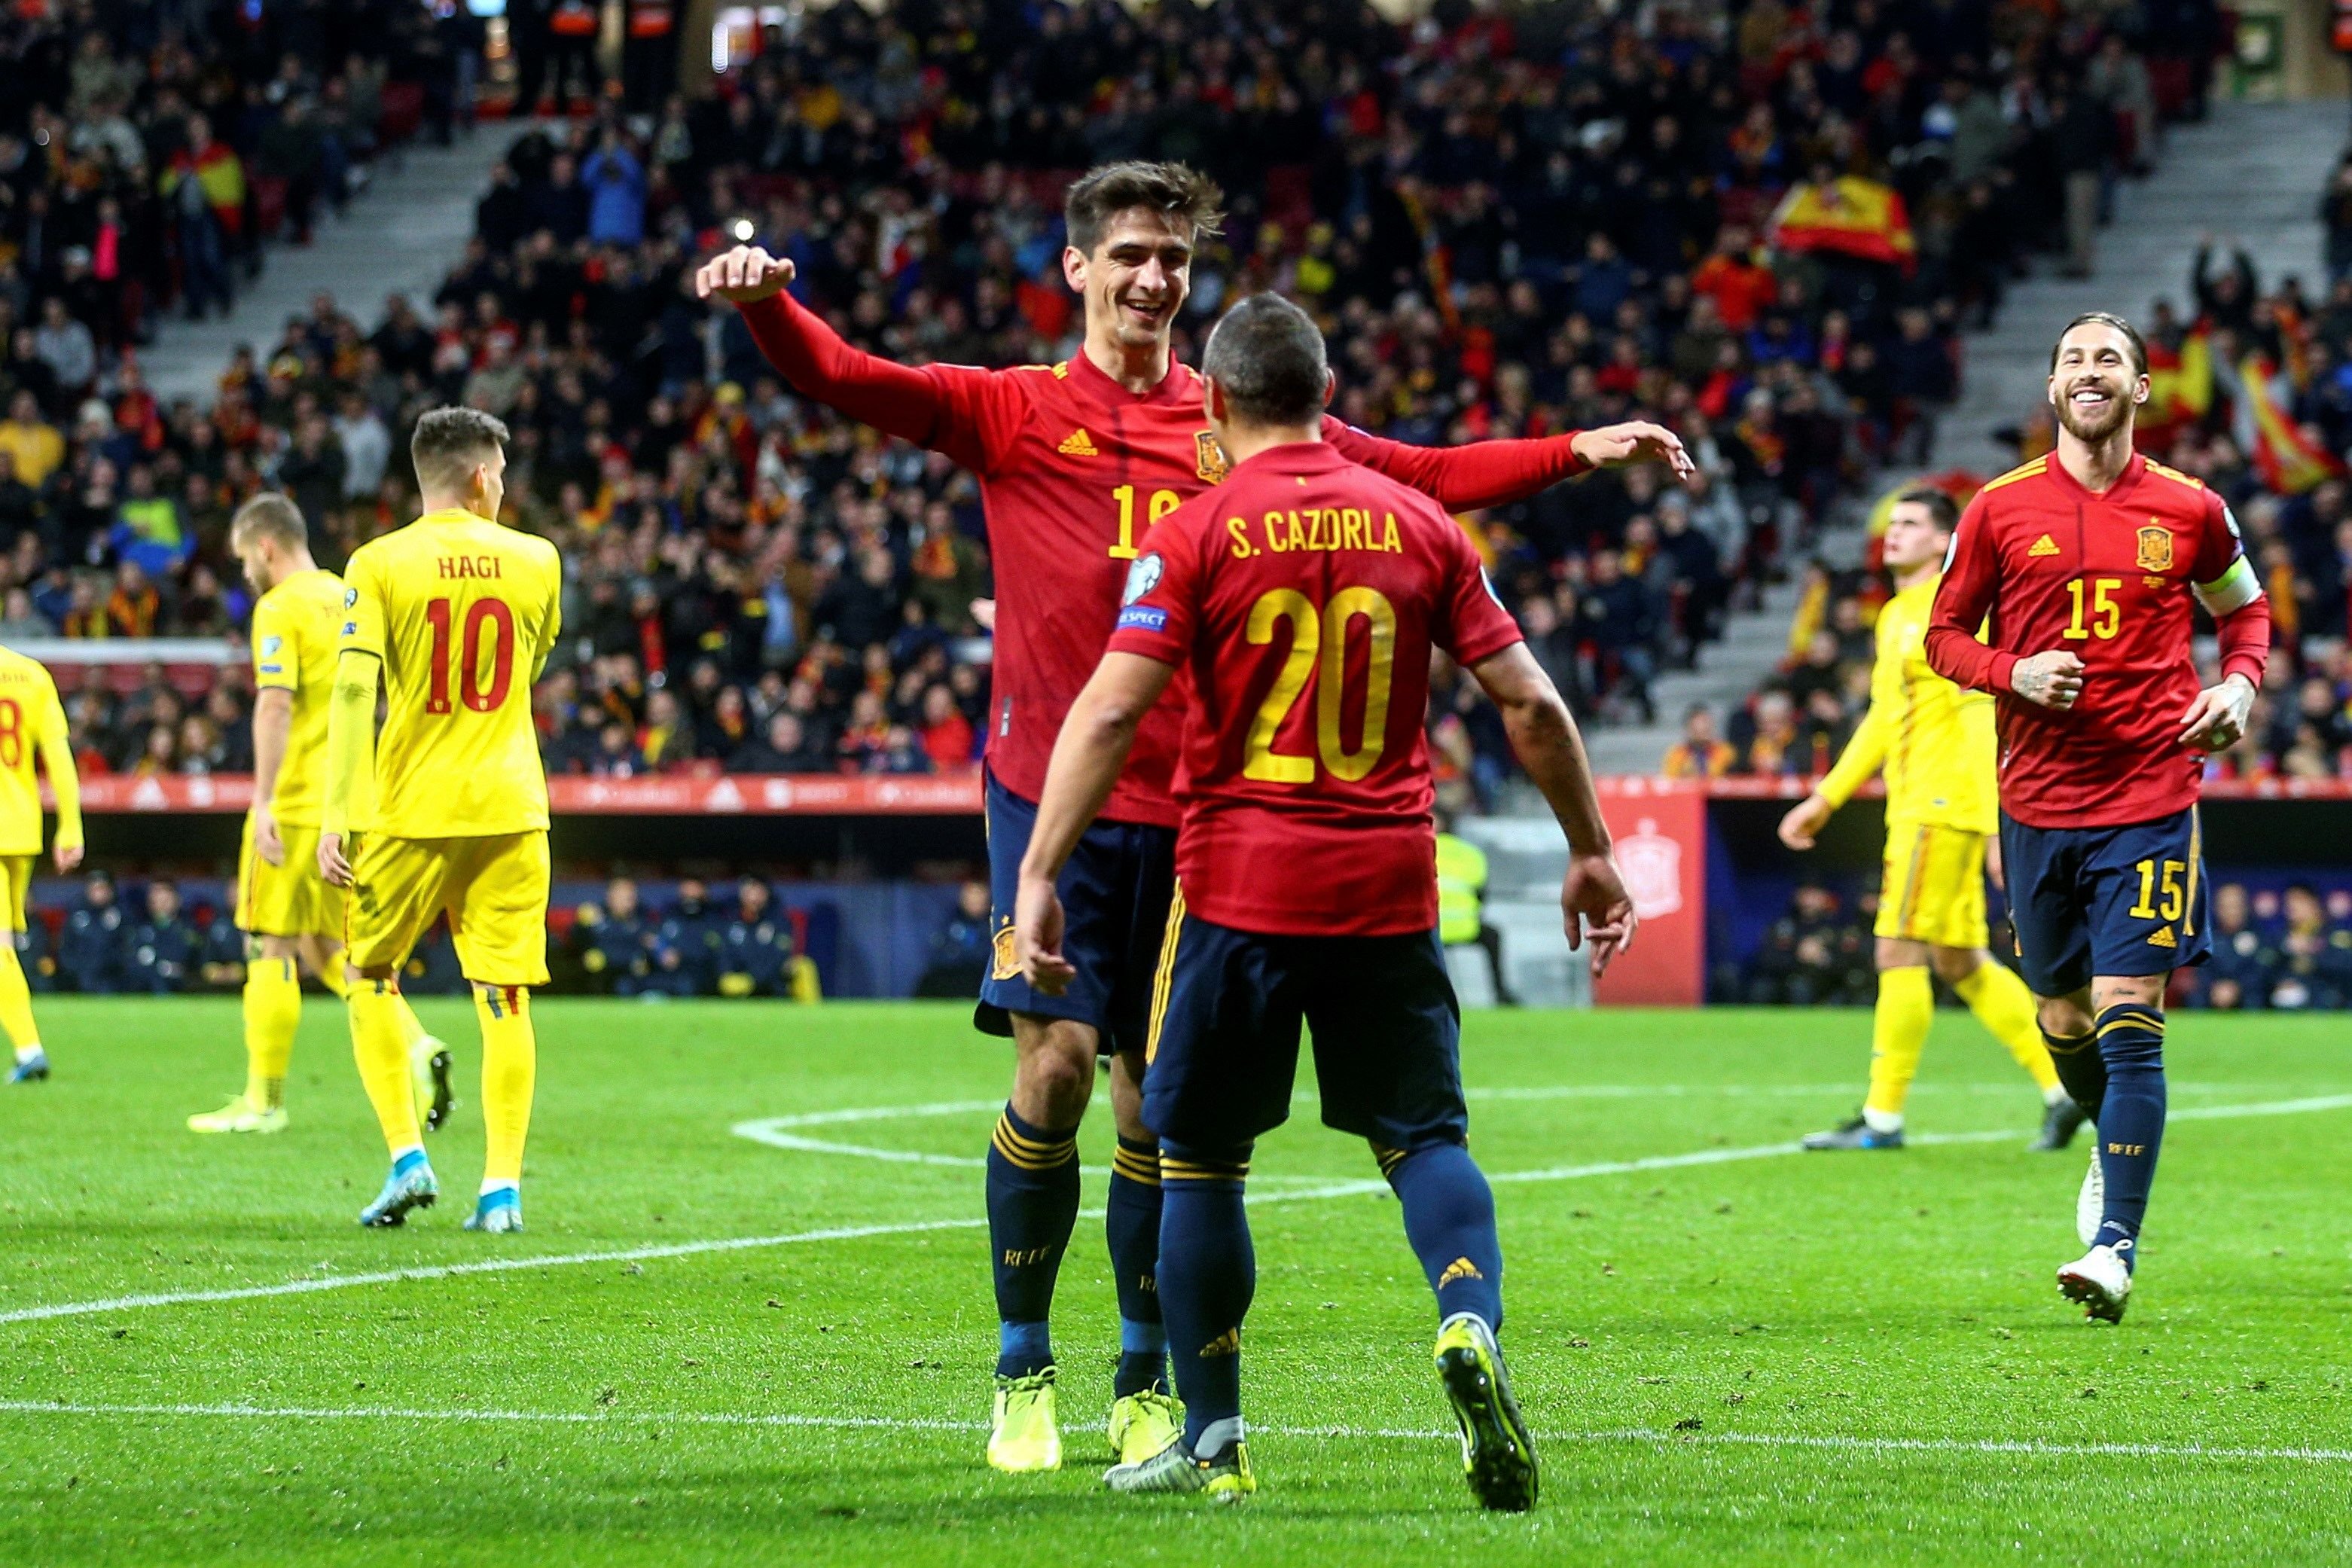 Manita de España a Rumania y ya es cabeza de serie para la Eurocopa (5-0)